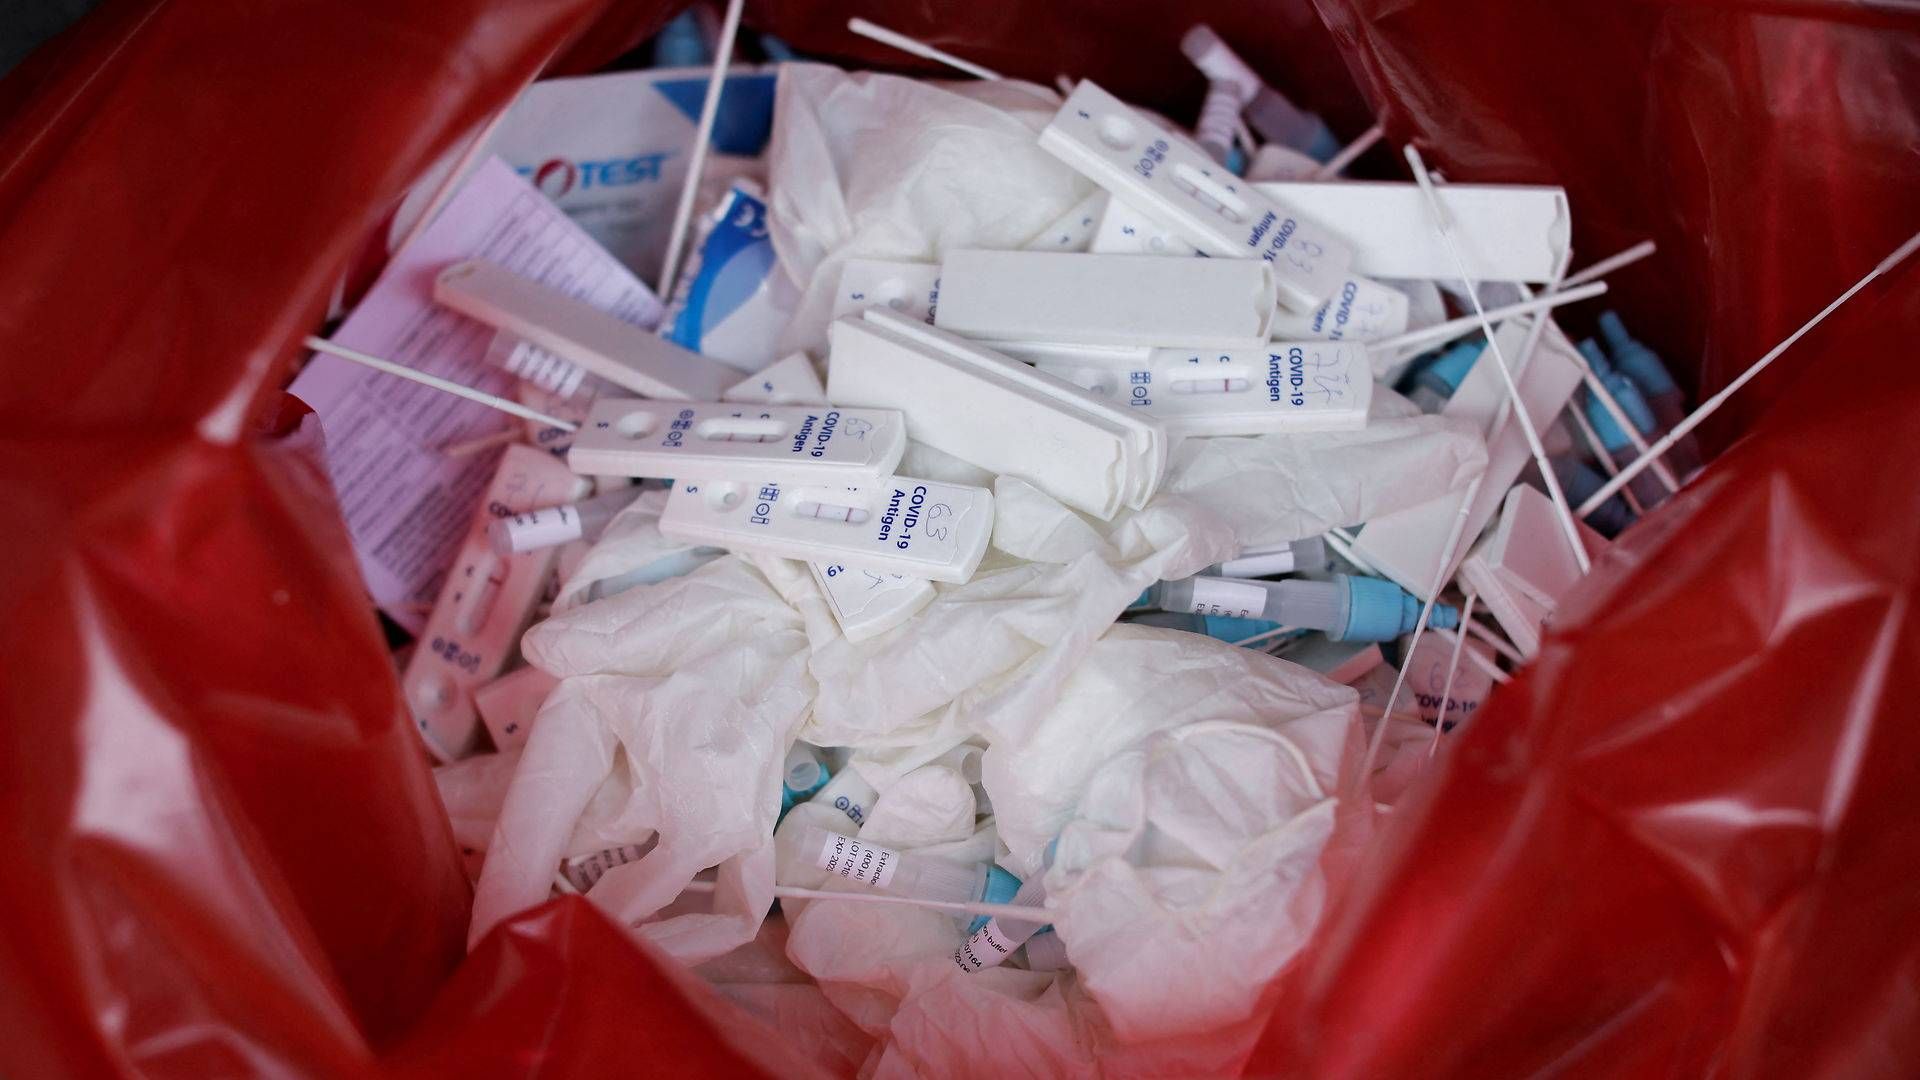 Coronapandemien har øget problemerne med at bortskaffe medicinsk affald uden at belaste miljøet. | Foto: Angela Ponce/Reuters/Ritzau Scanpix